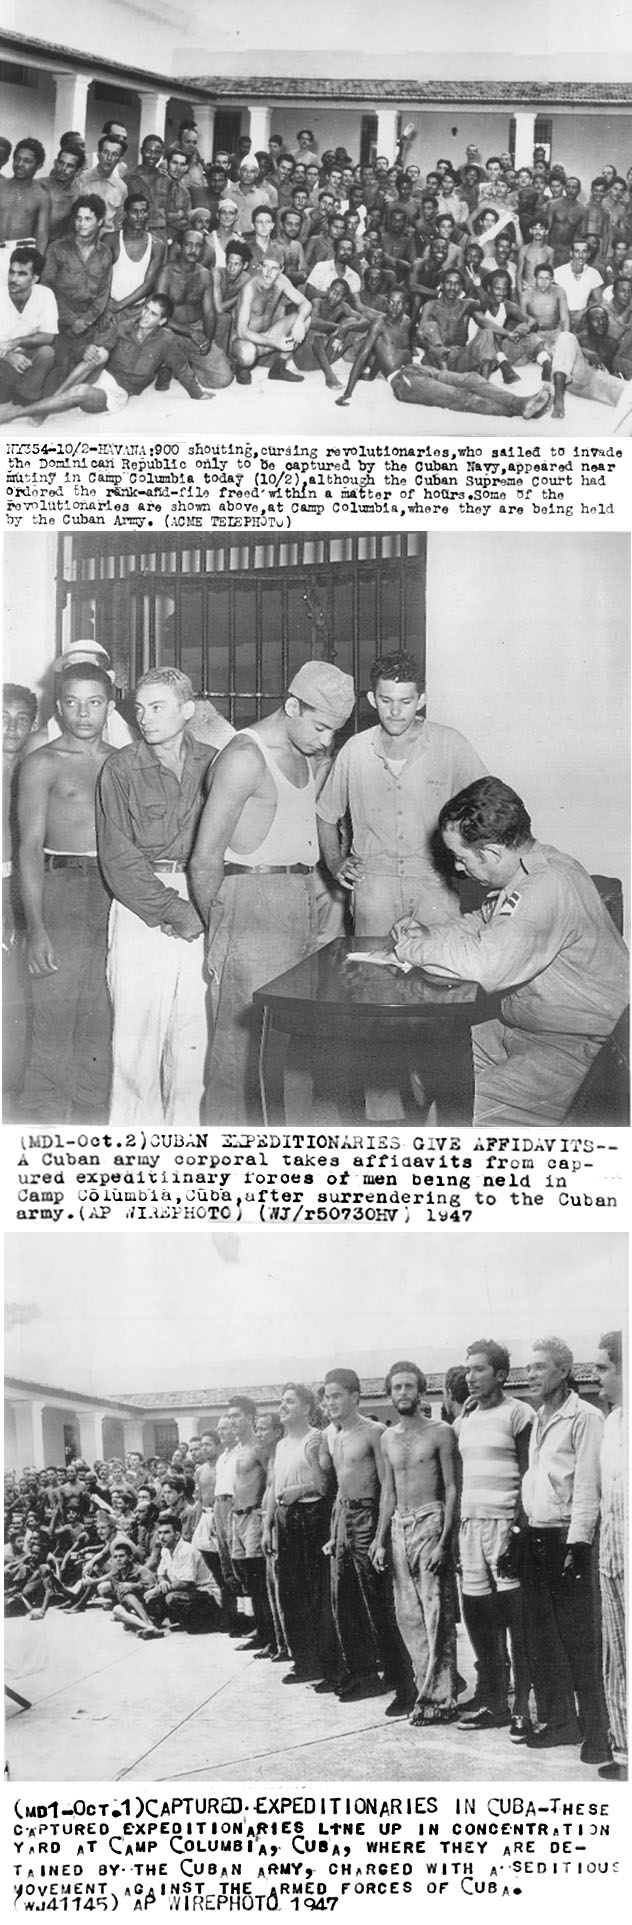 FOTOS DE CUBA ! SOLAMENTES DE ANTES DEL 1958 !!!! - Página 3 Invasi10